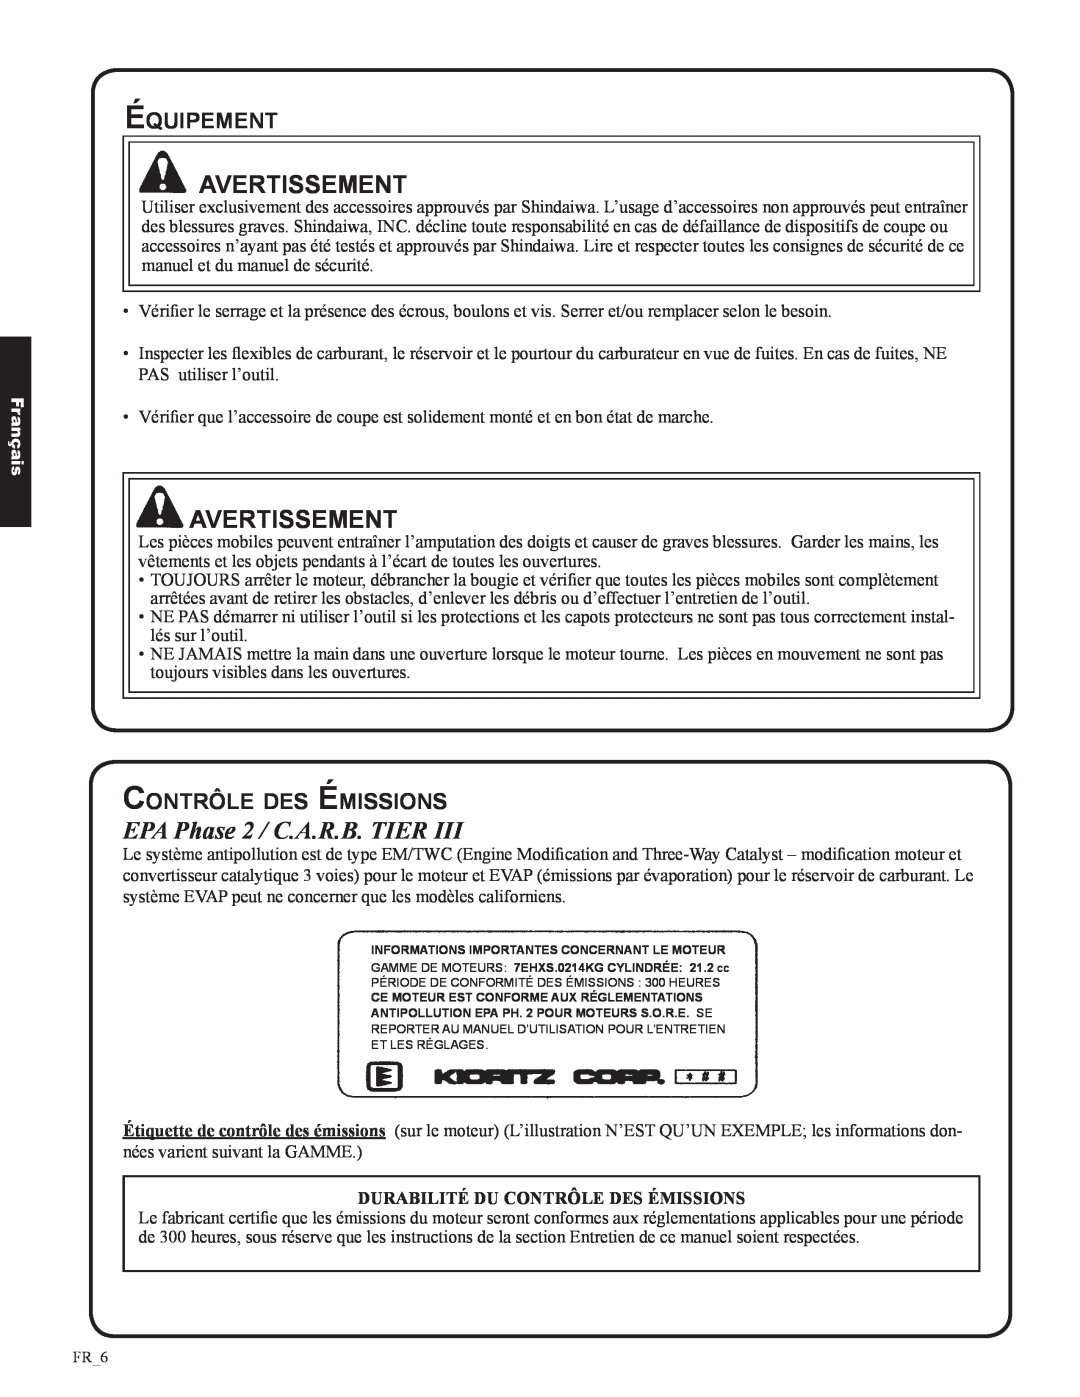 Shindaiwa DH212, 82053 manual EPA Phase 2 / C.A.R.B. TIER, Équipement, Contrôle des émissions, Avertissement, Français 